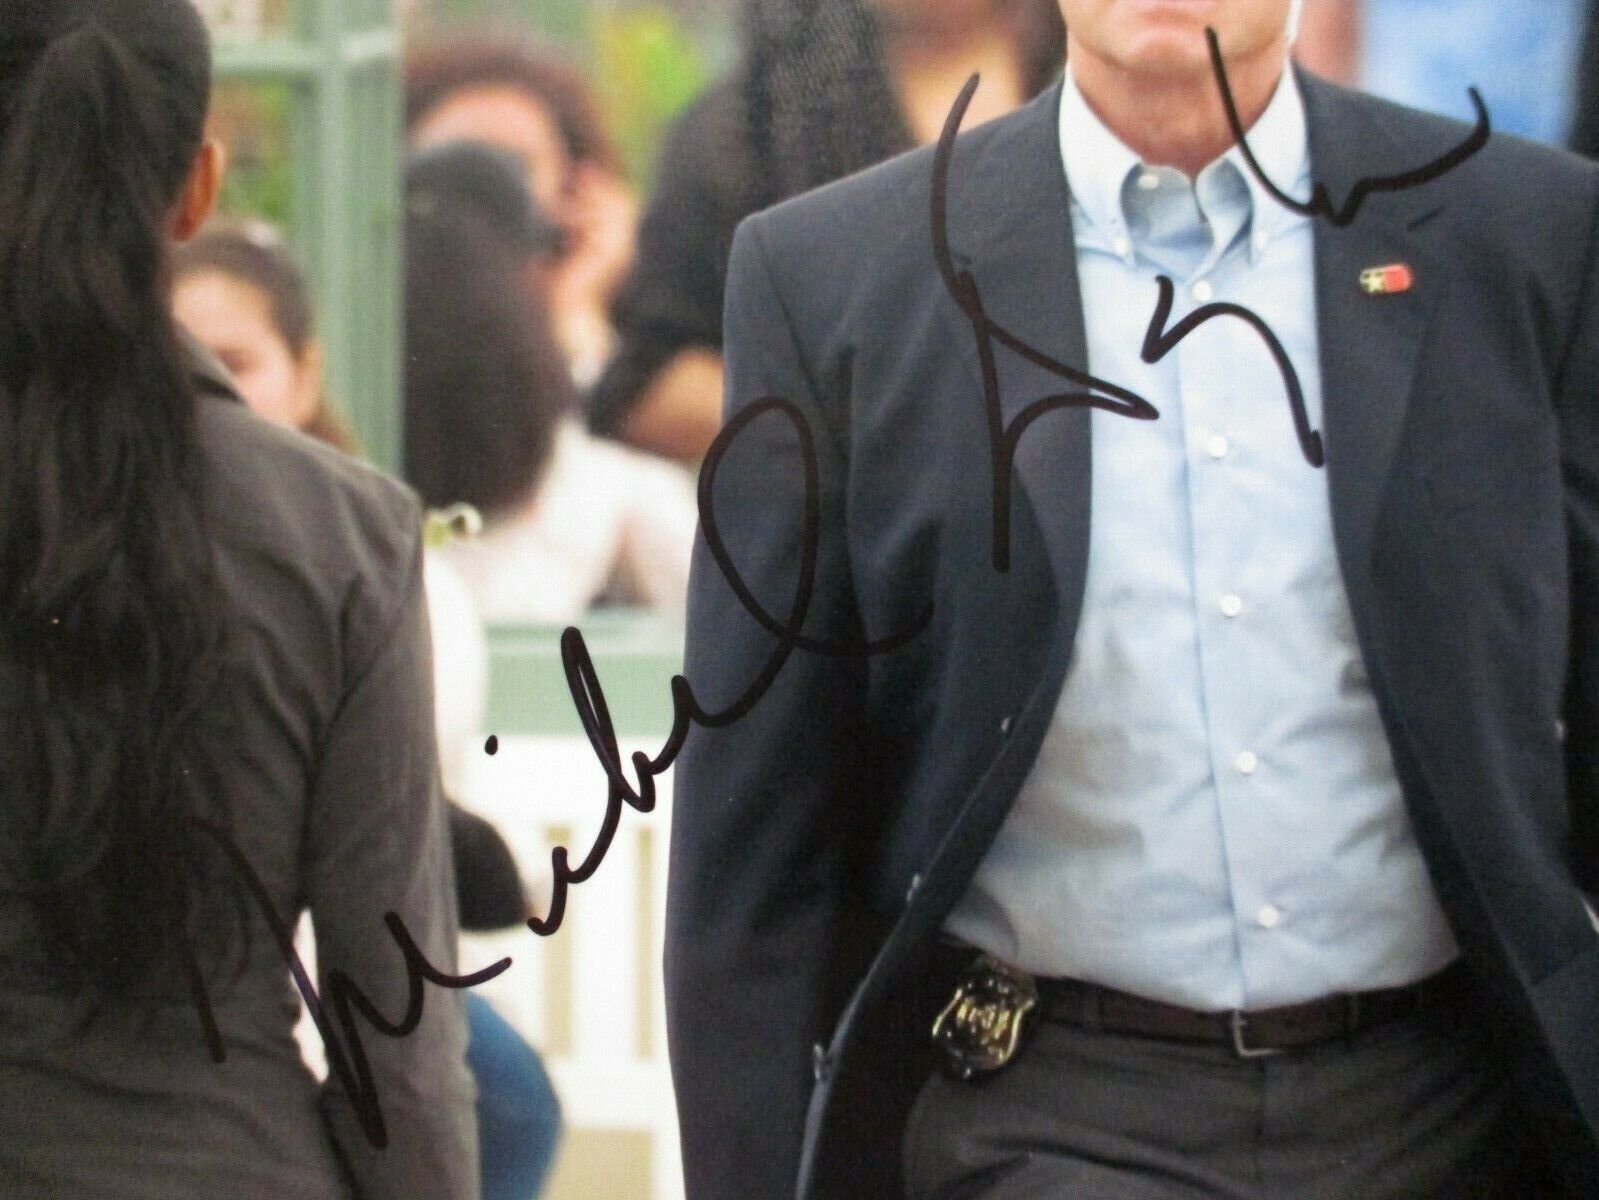 Michael Douglas Actor Signed Autographed 8.5x11 Color Photo JSA